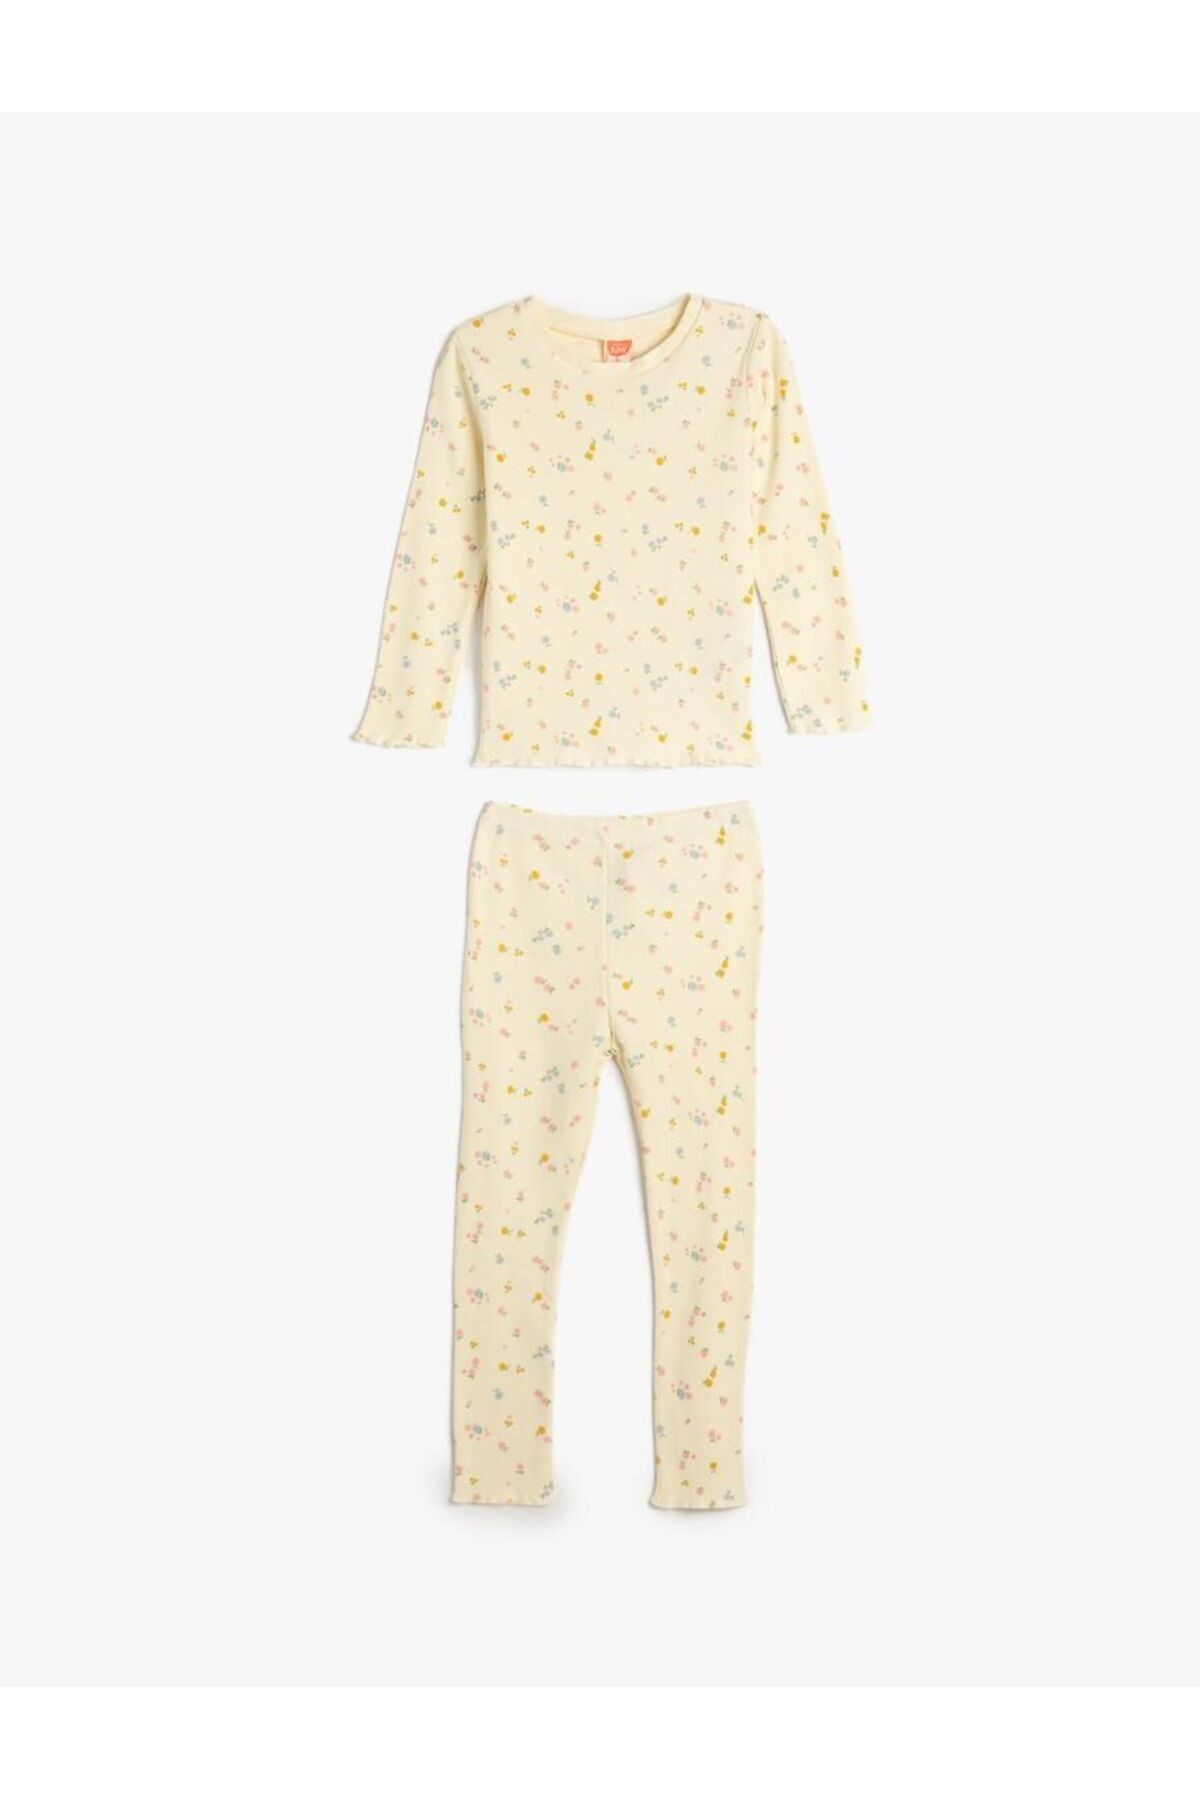 Koton Kız Bebek Pamuklu Pijama Takımı Çiçek Desenli Uzun Kollu Tişört ve Beli Lastikli Pijama Altı 2 Parça